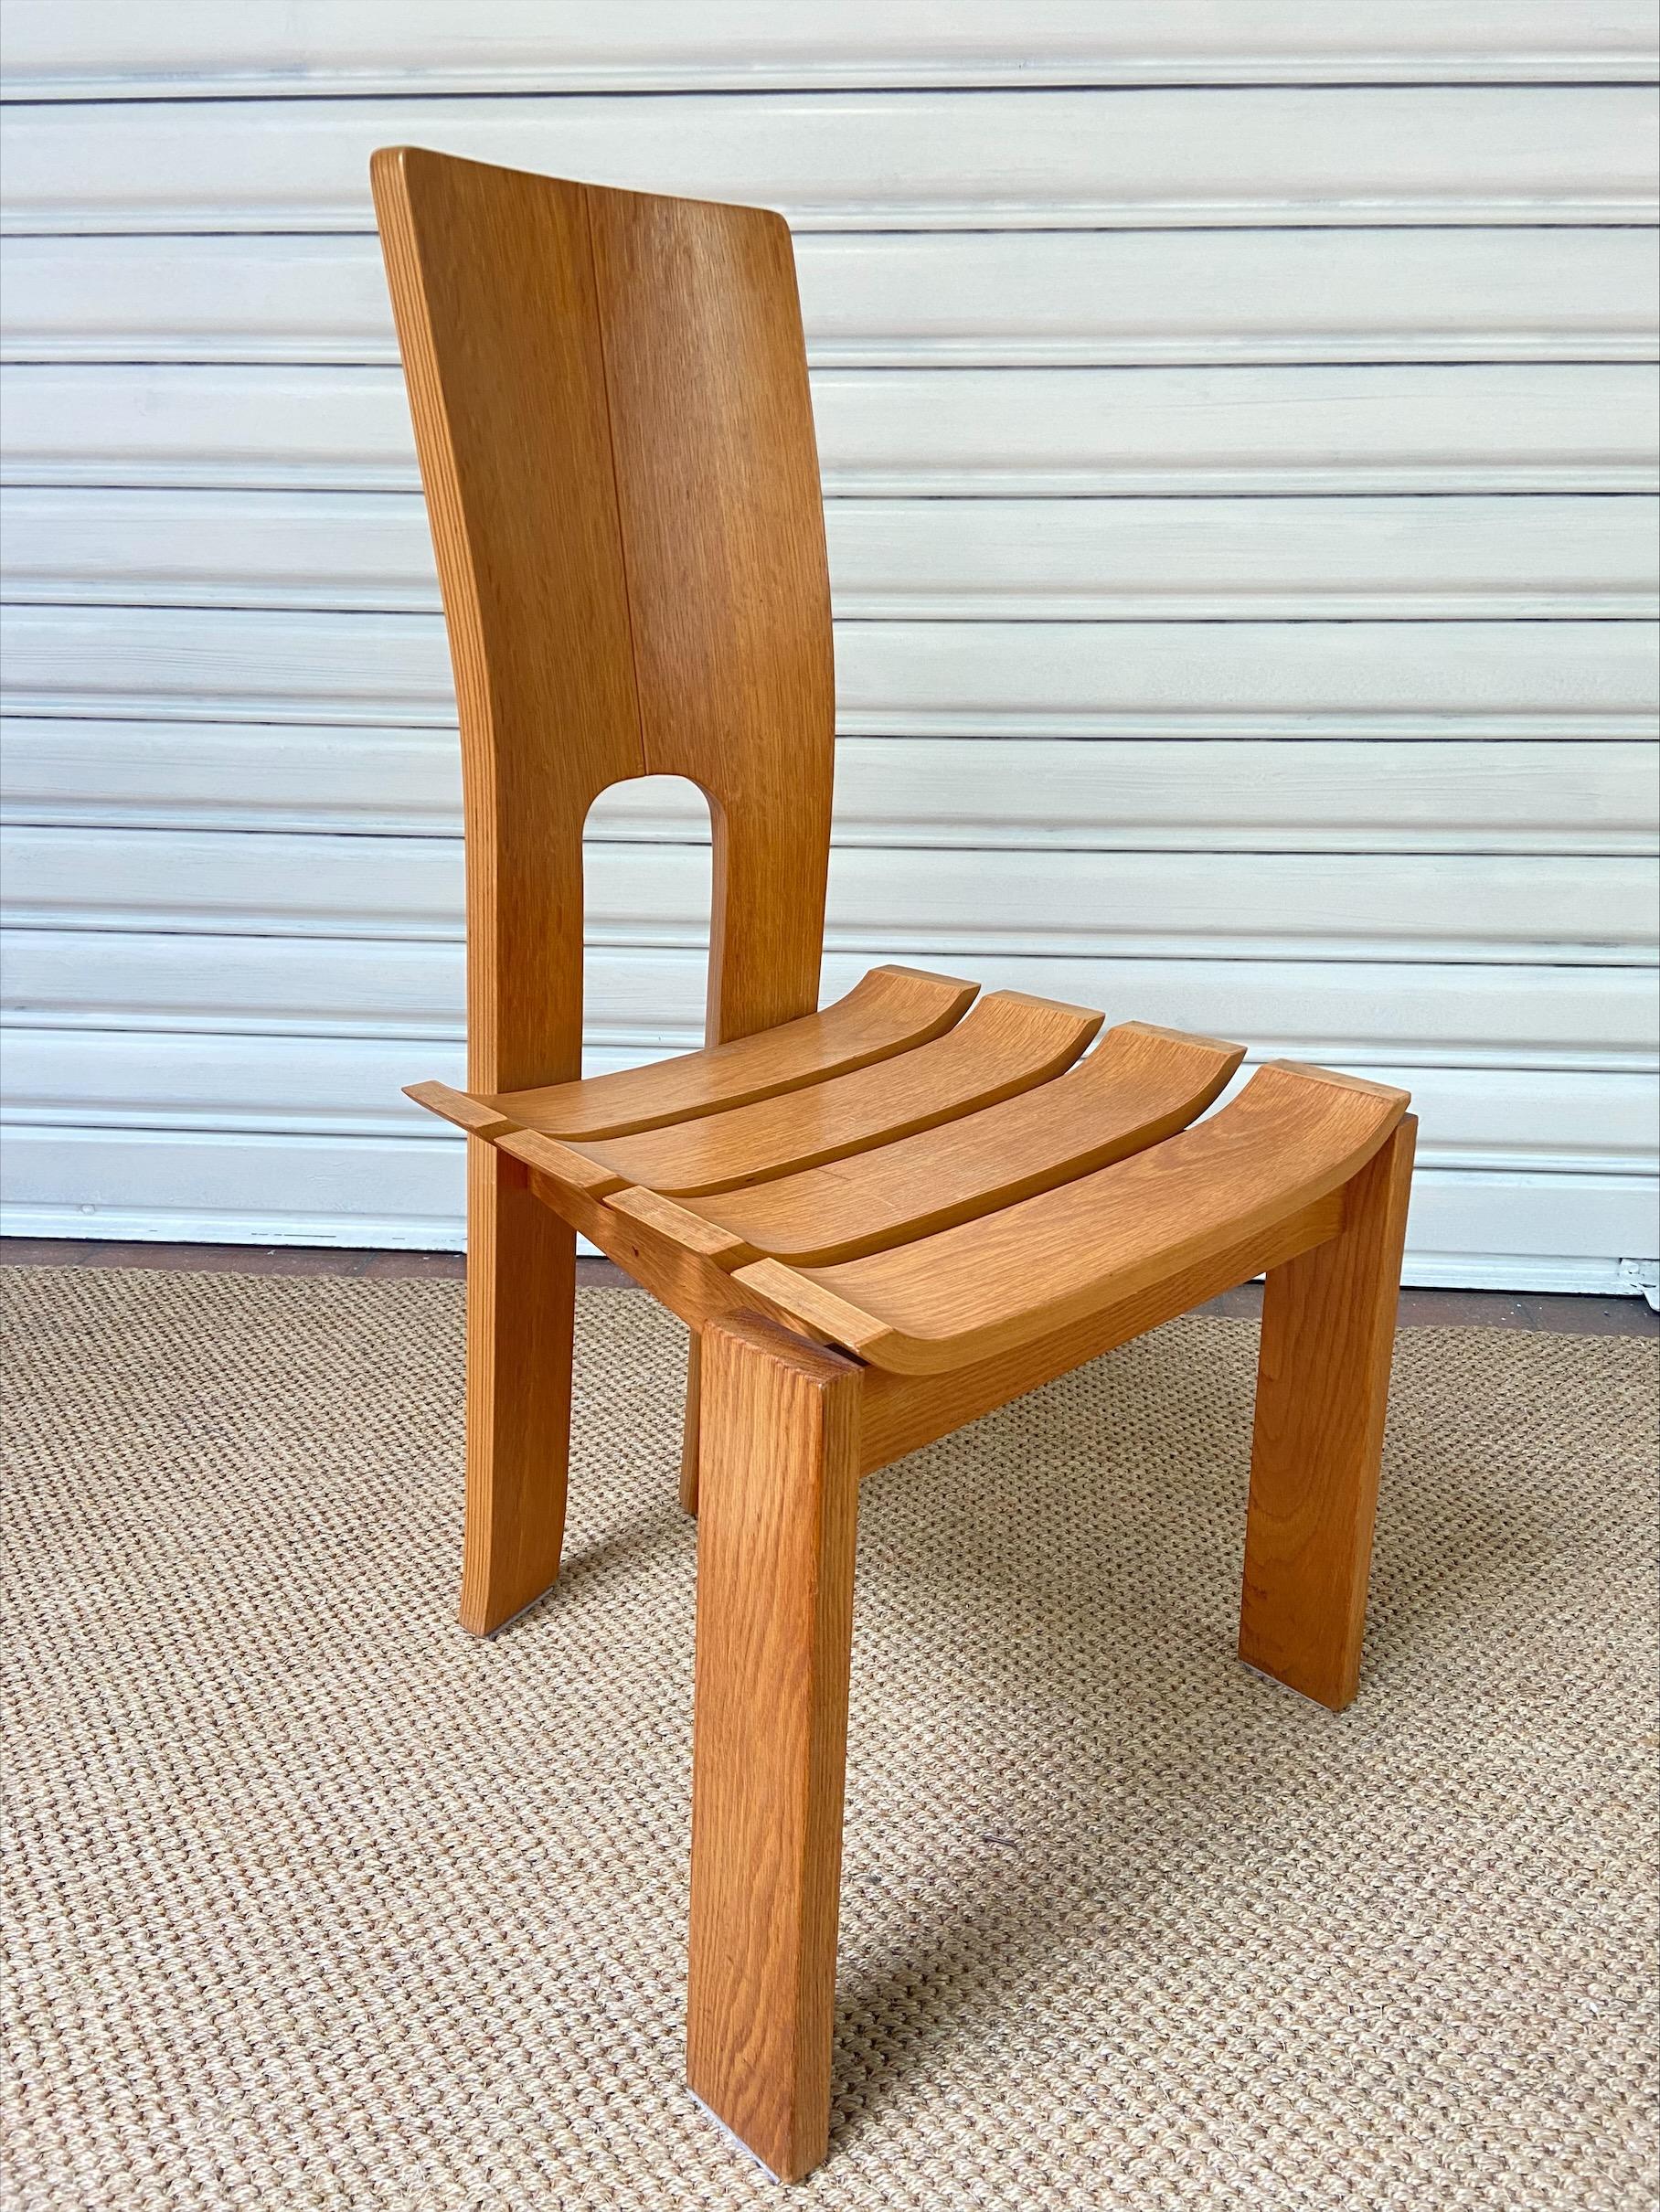 4 chaises - design scandinave
orme massif
Circa 1970
Mesures : L49 x P47 x H96 cm
Hauteur de l'assise : 45 cm
Comme une version postmoderne d'une chaise Alvar Aalto. Le dossier et les sièges voûtés sont une caractéristique étonnante.